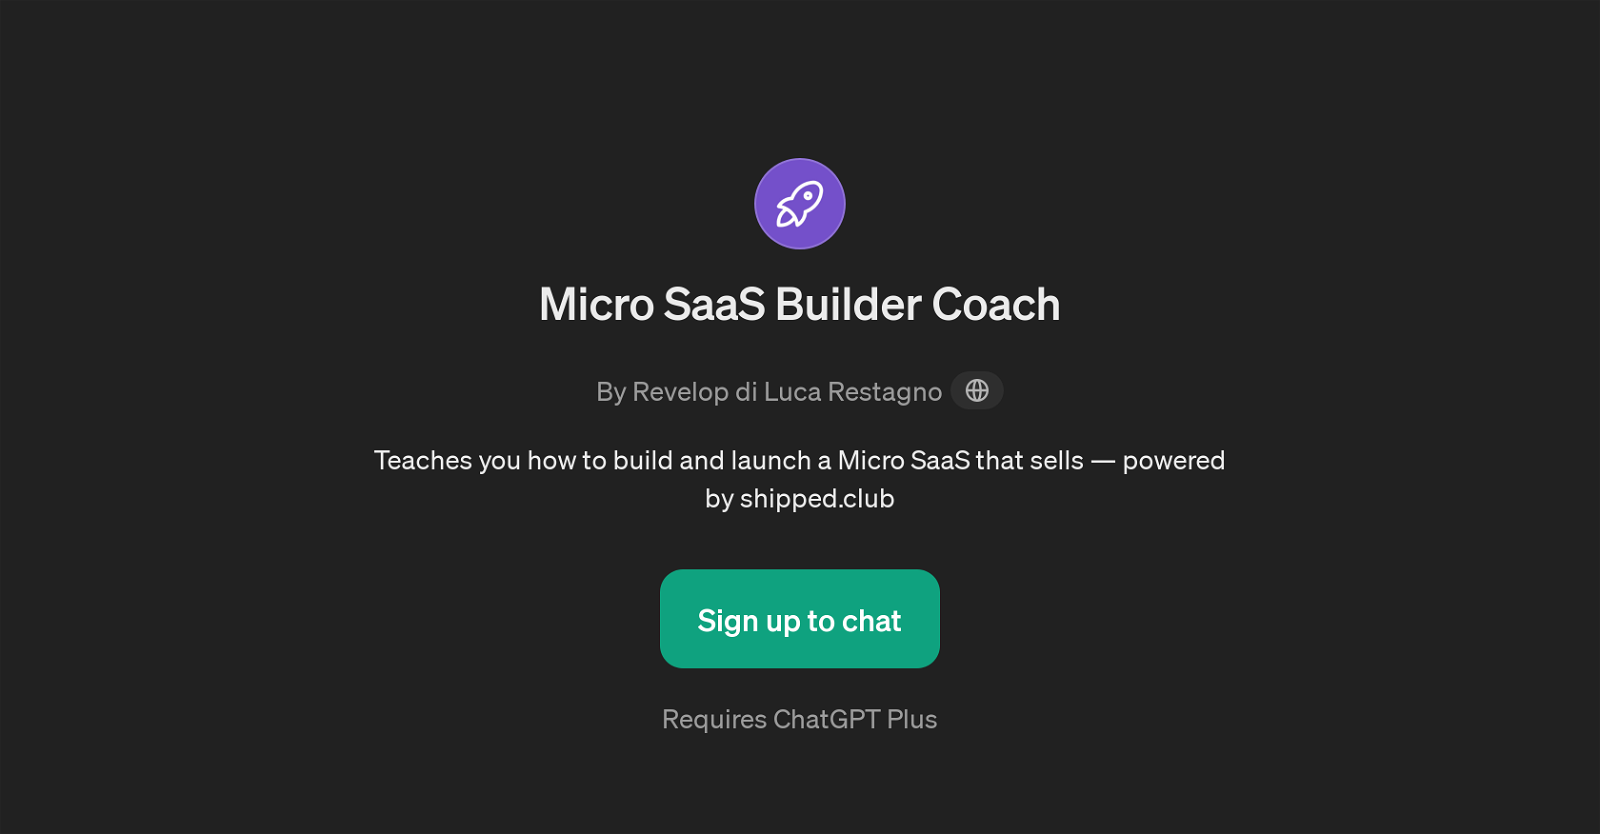 Micro SaaS Builder Coach website